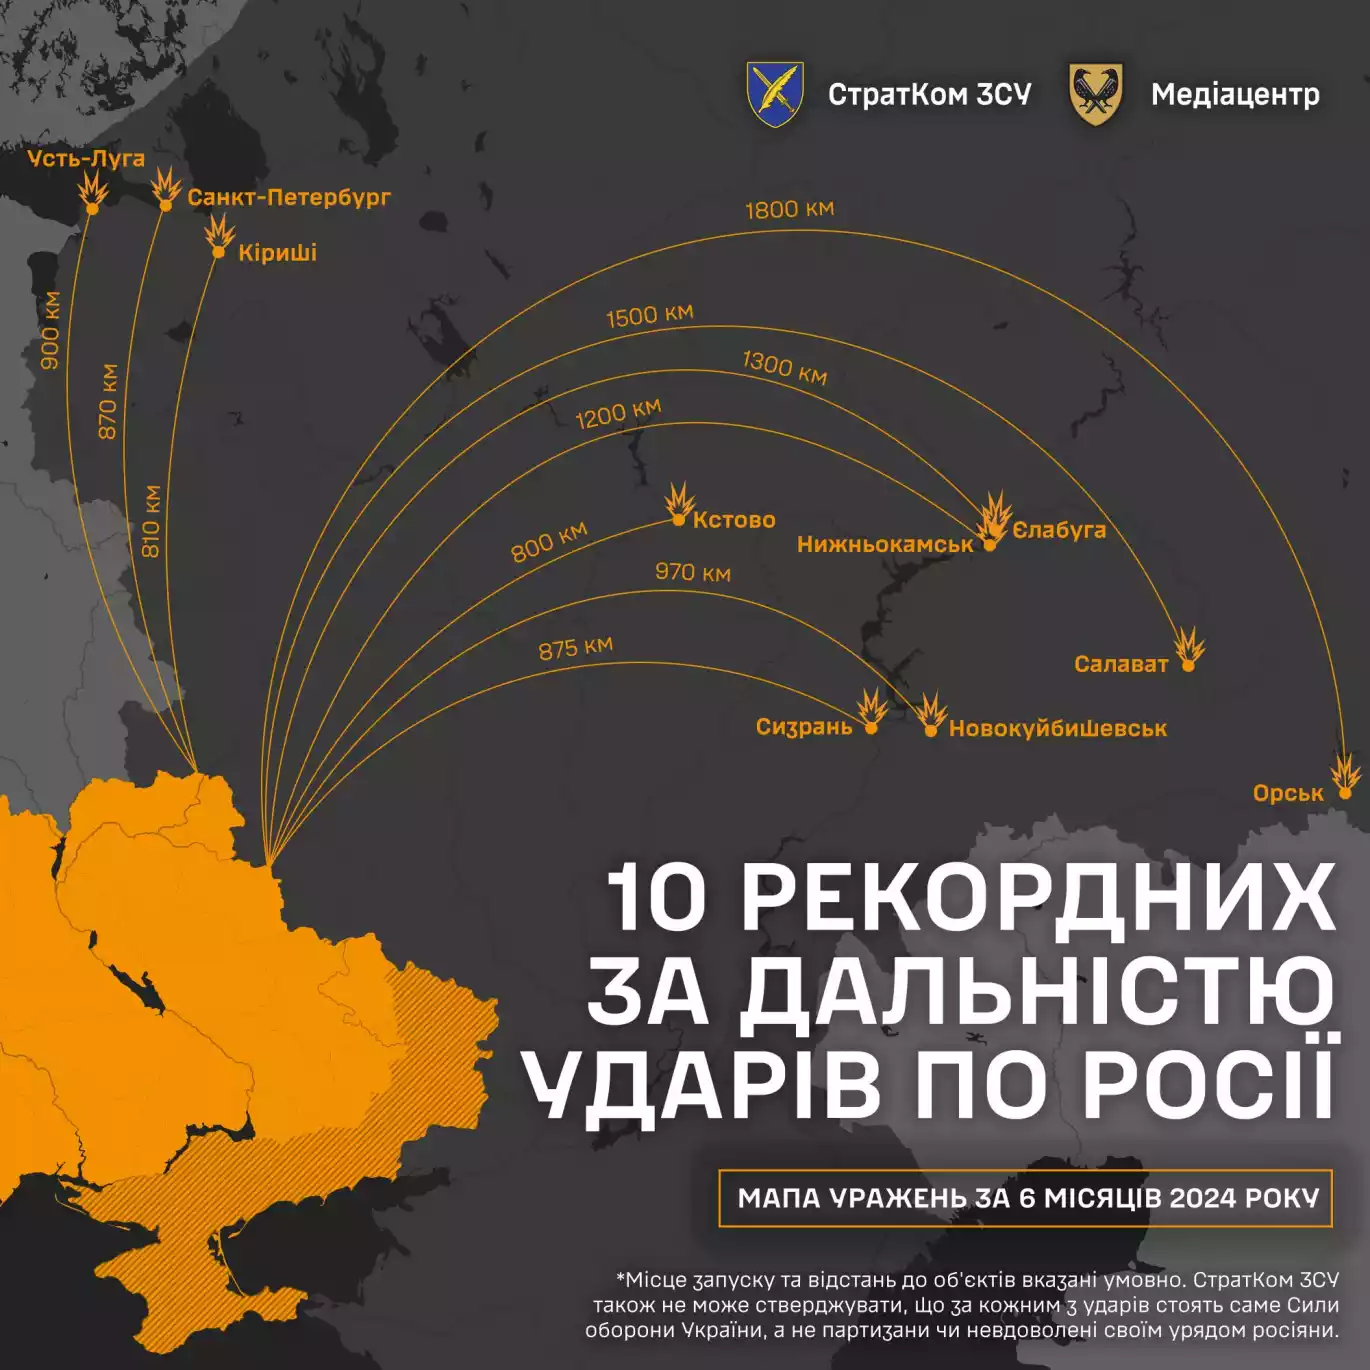 СтратКом ЗСУ оприлюднив мапу 10 рекордних за дальністю ударів по Росії, здійснених за останні 6 місяців